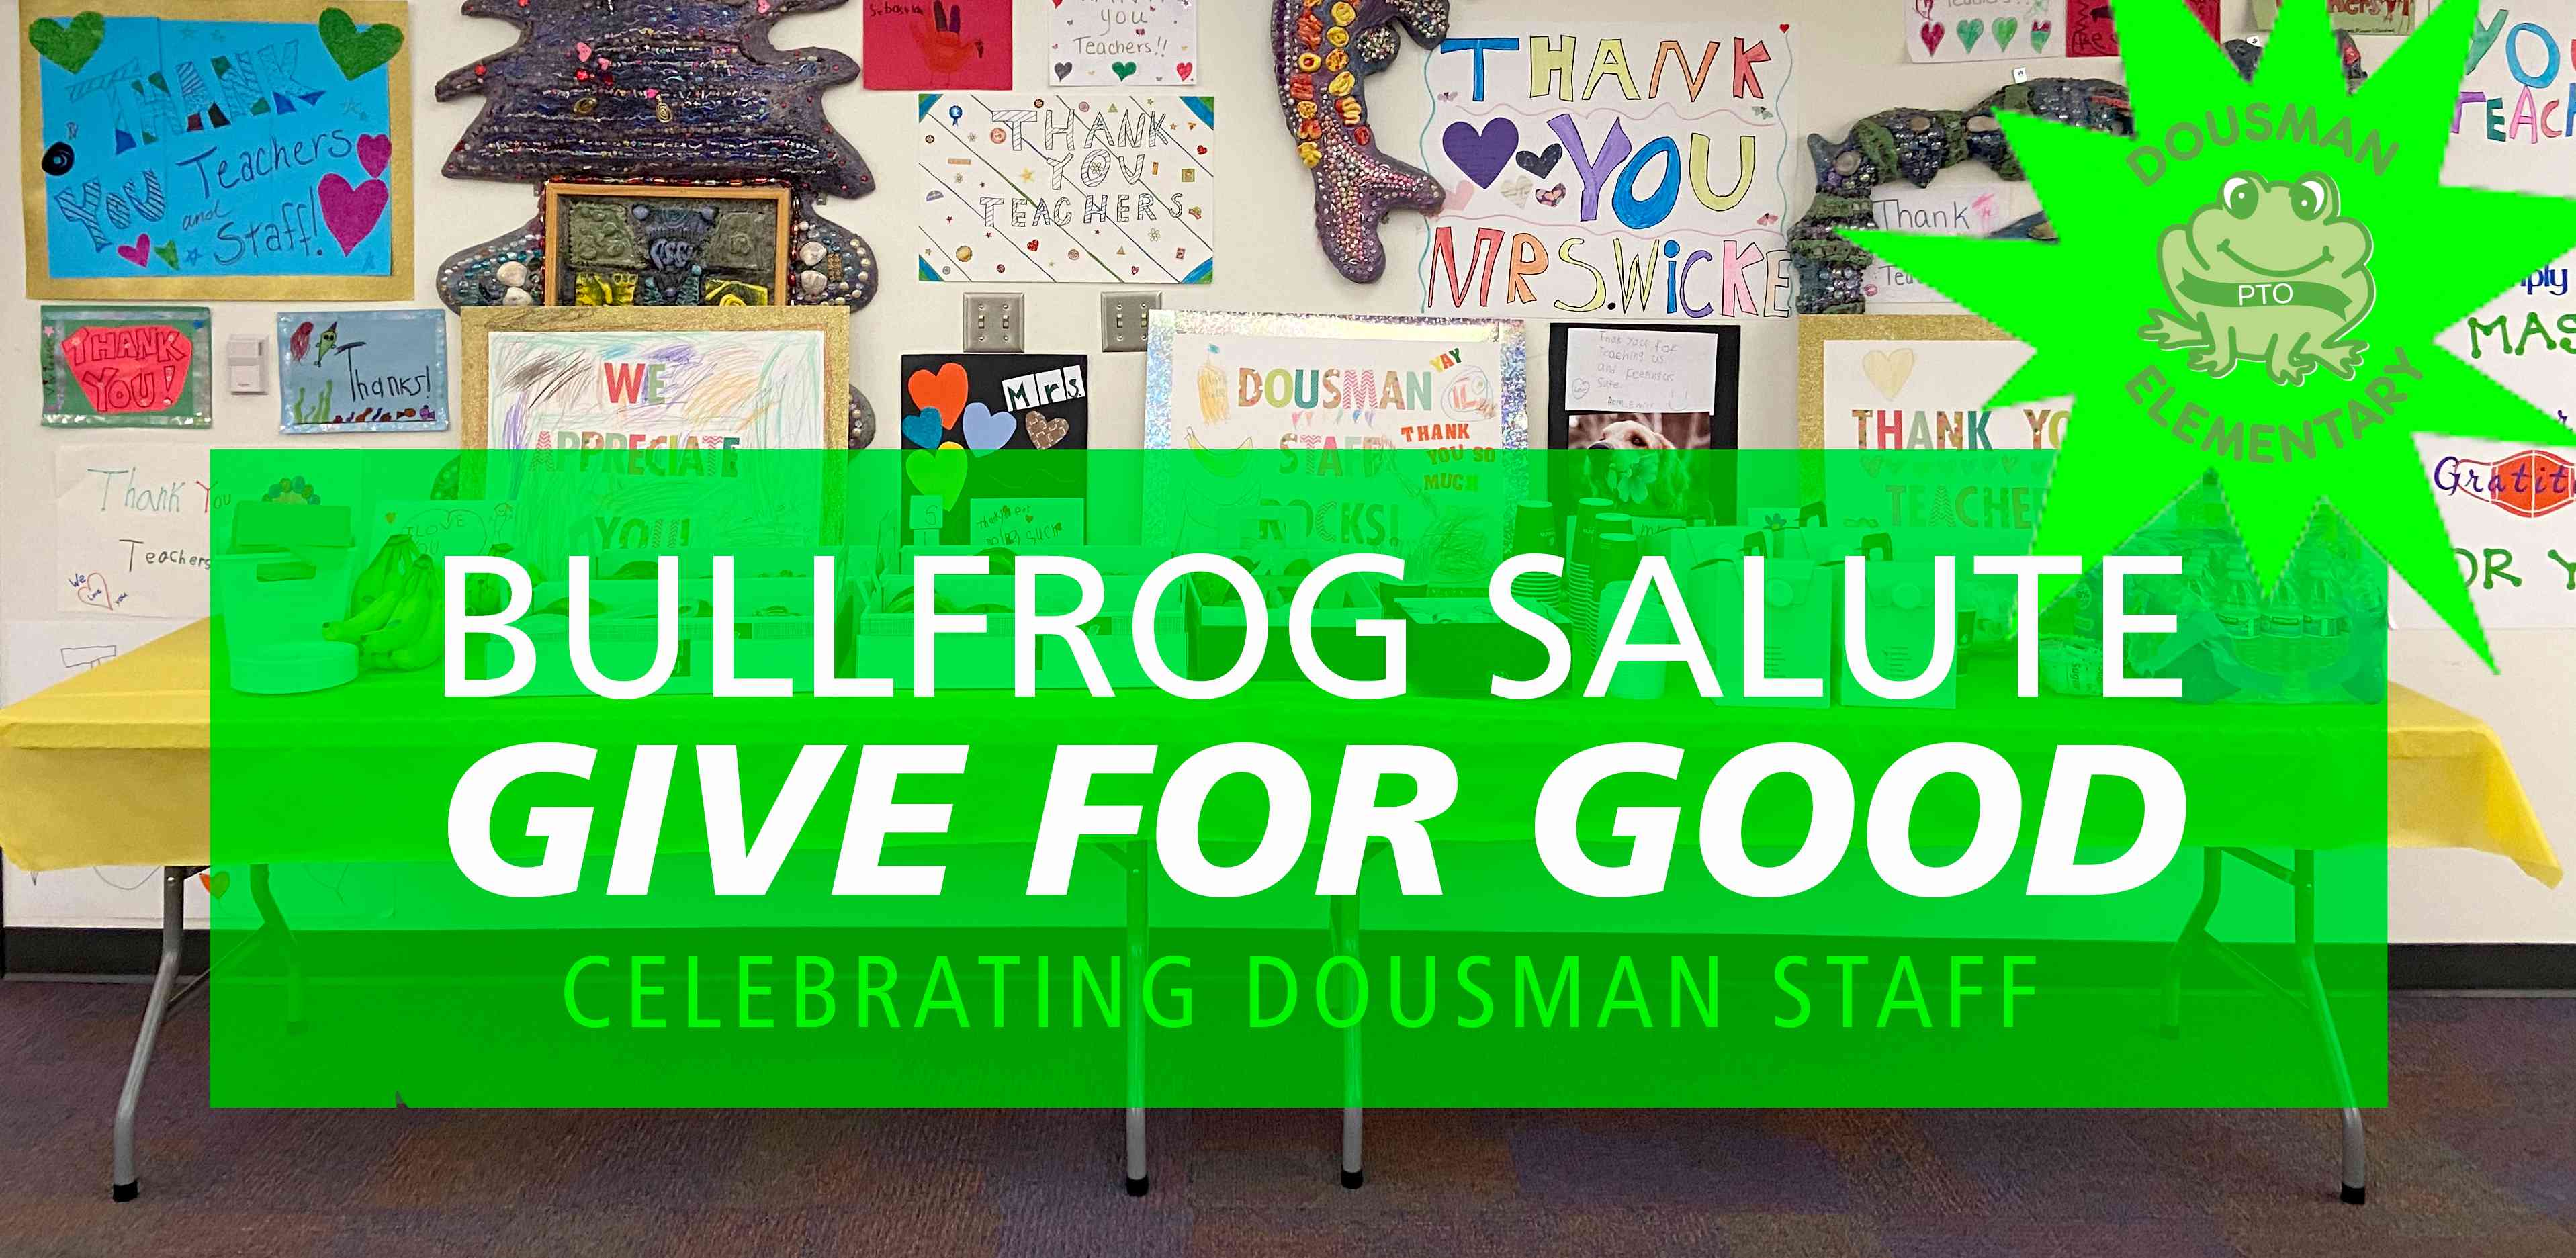 Bullfrog Salute: Give for Good! Image